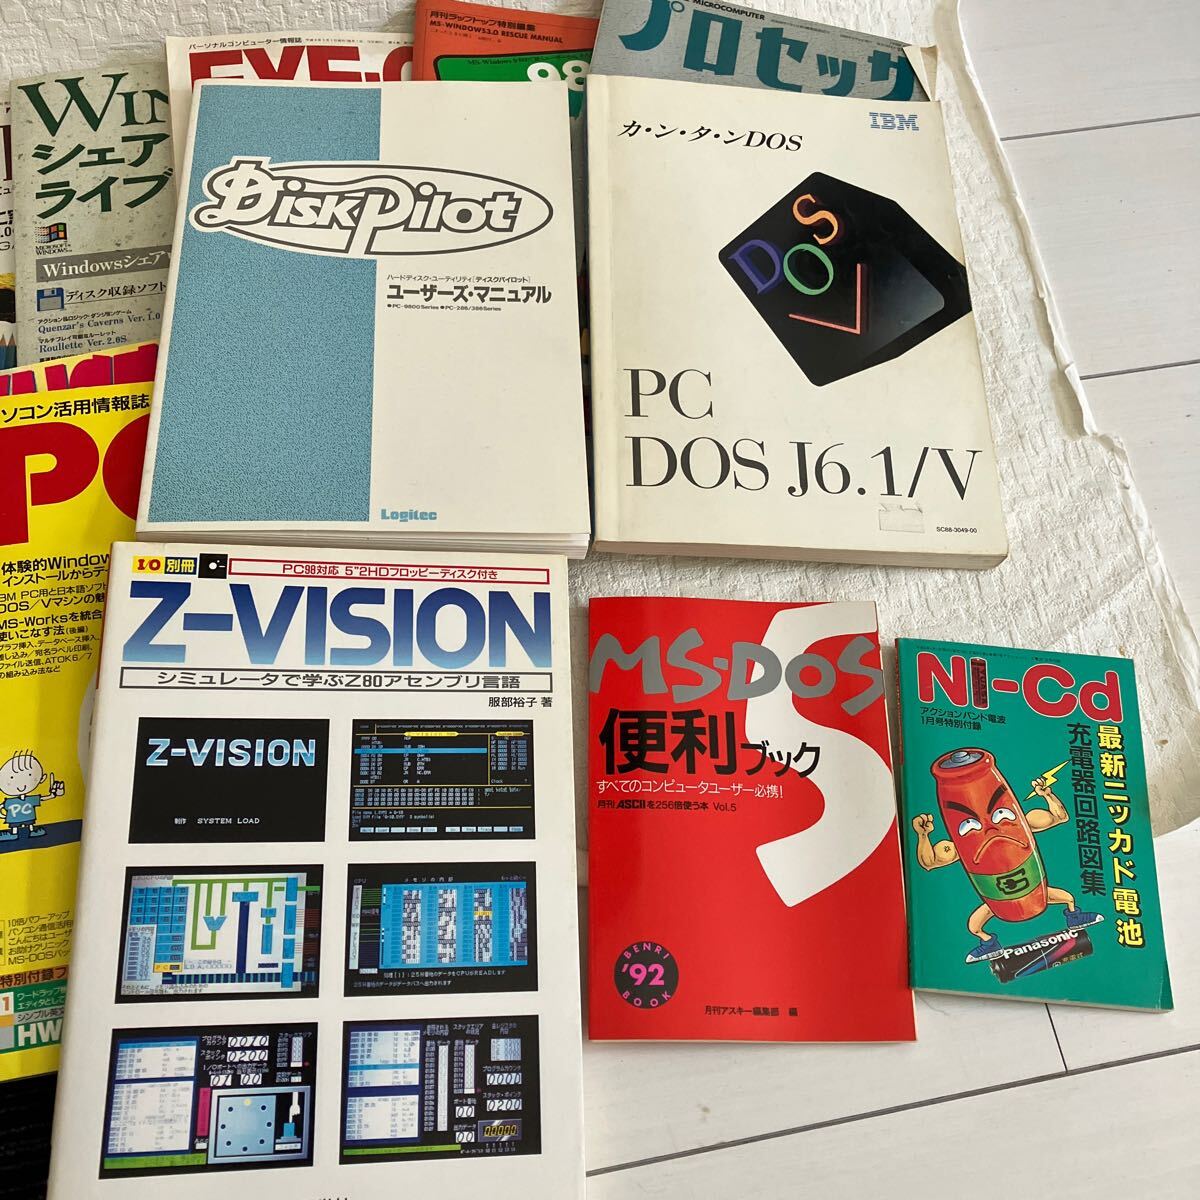 e338/13-80 雑誌のみ パソコン 情報誌 まとめて WINDOWS PCing DOS マニュアル プロセッサ 言語 98シリーズ ドスブイユーザーの画像2